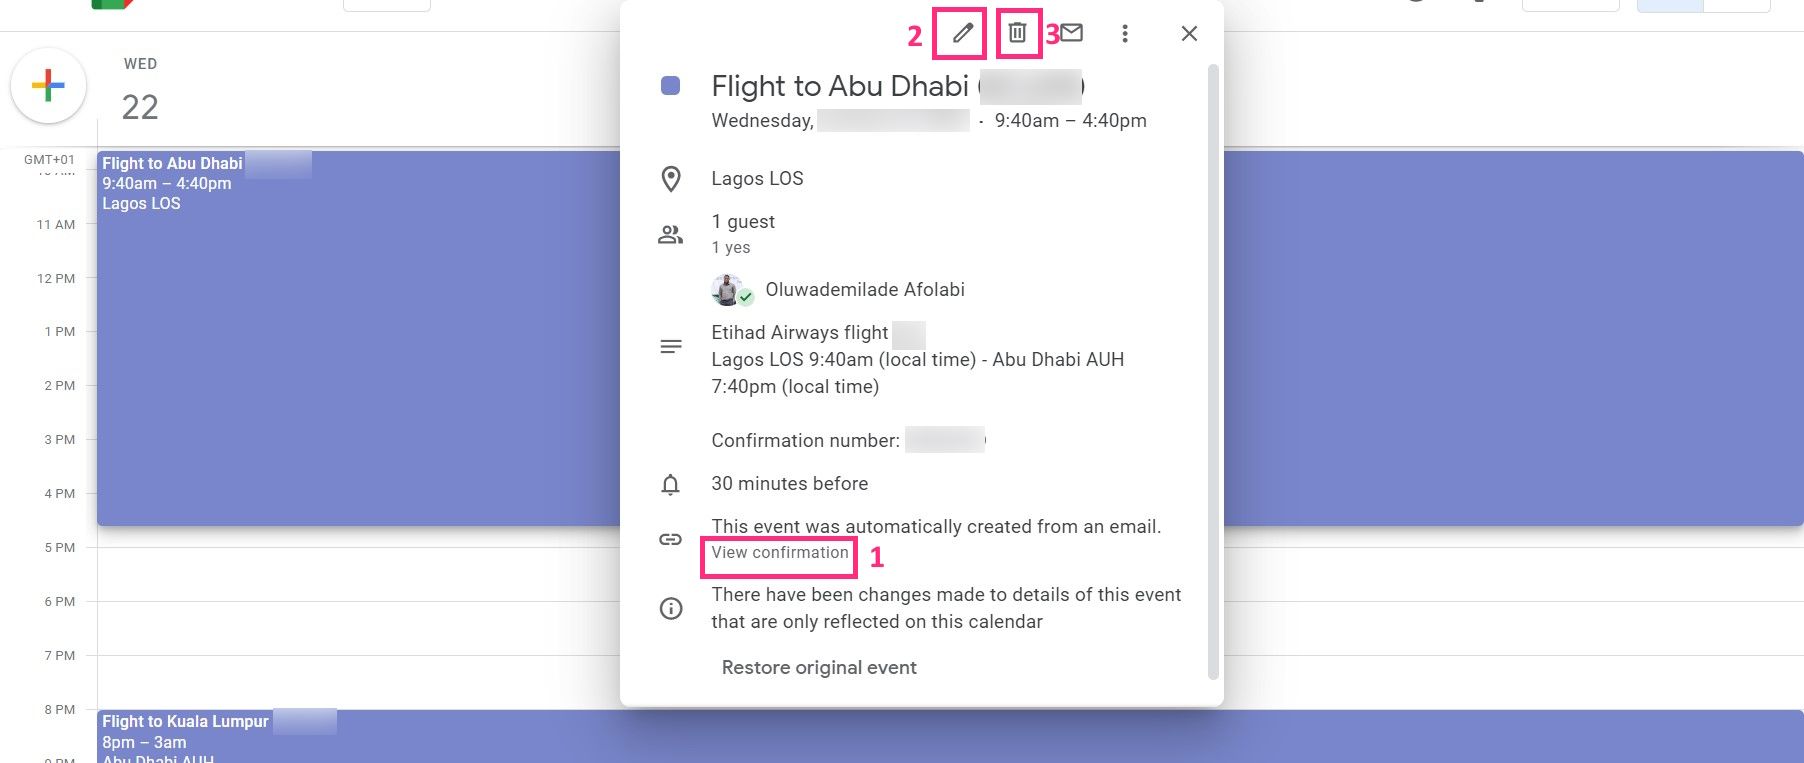 Screenshot of flight details in Google Calendar